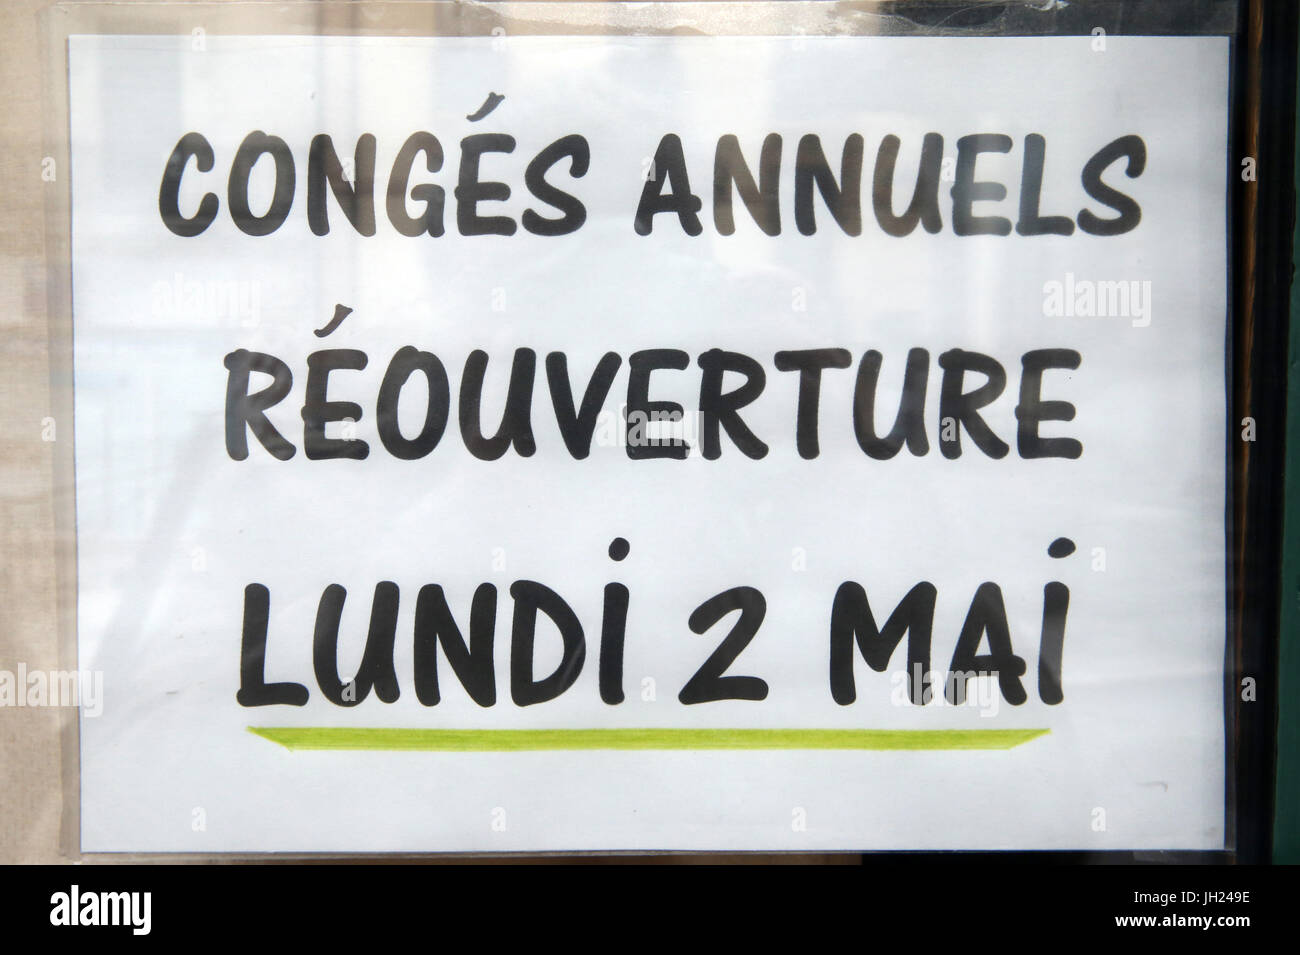 Fermeture pour congŽs annuels. France. Stock Photo